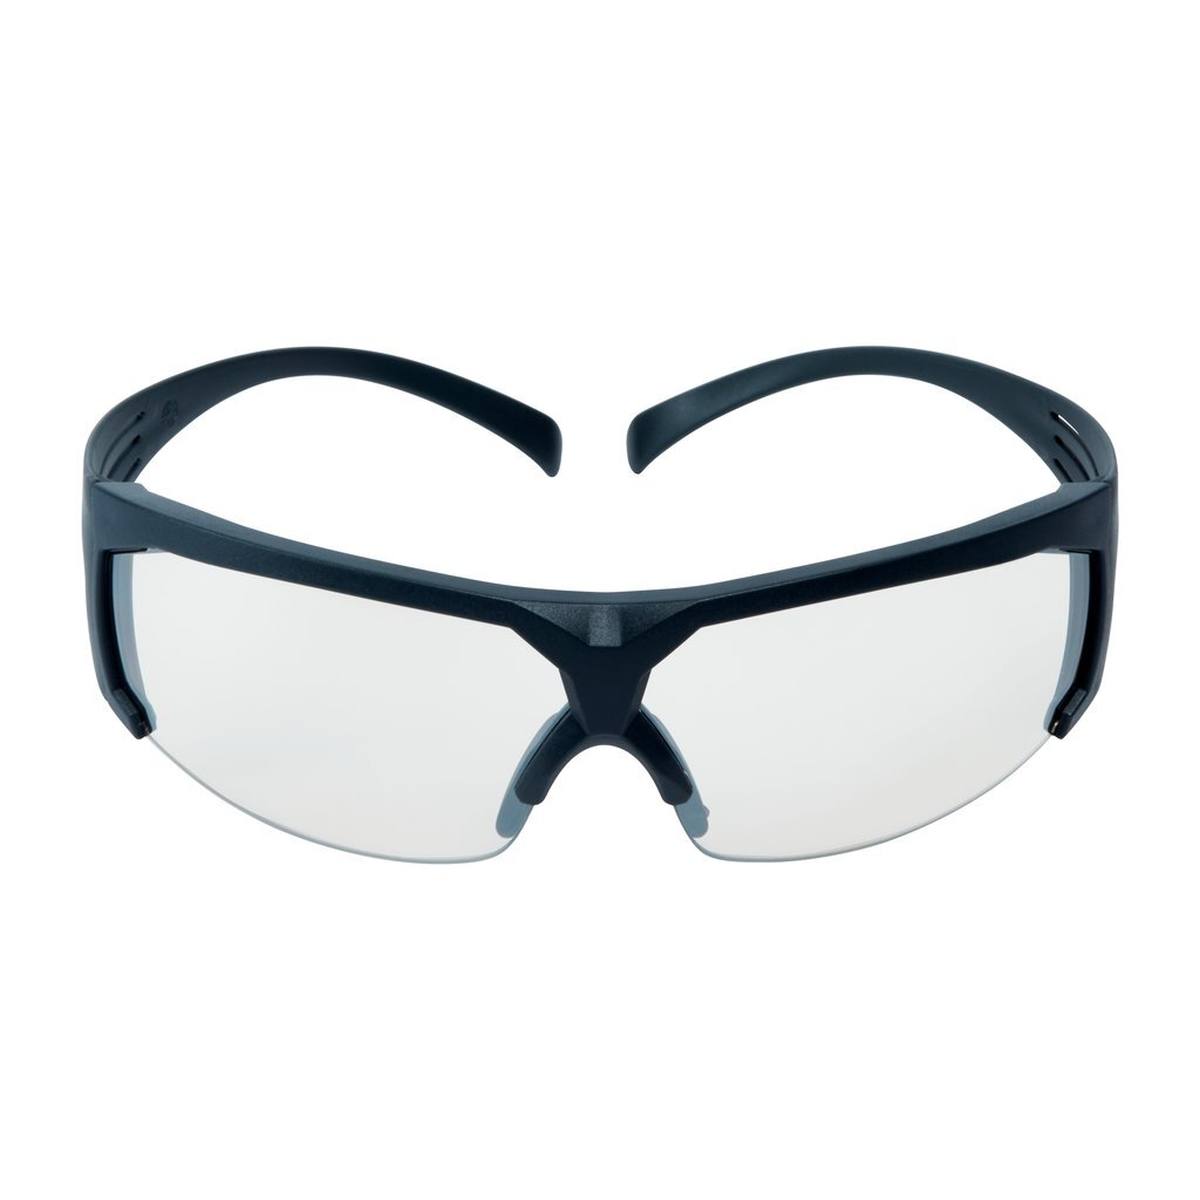 3M SecureFit 600 Schutzbrille, graue Bügel, Antikratz-Beschichtung, verspiegelte Scheibe für innen/außen, SF610AS-EU